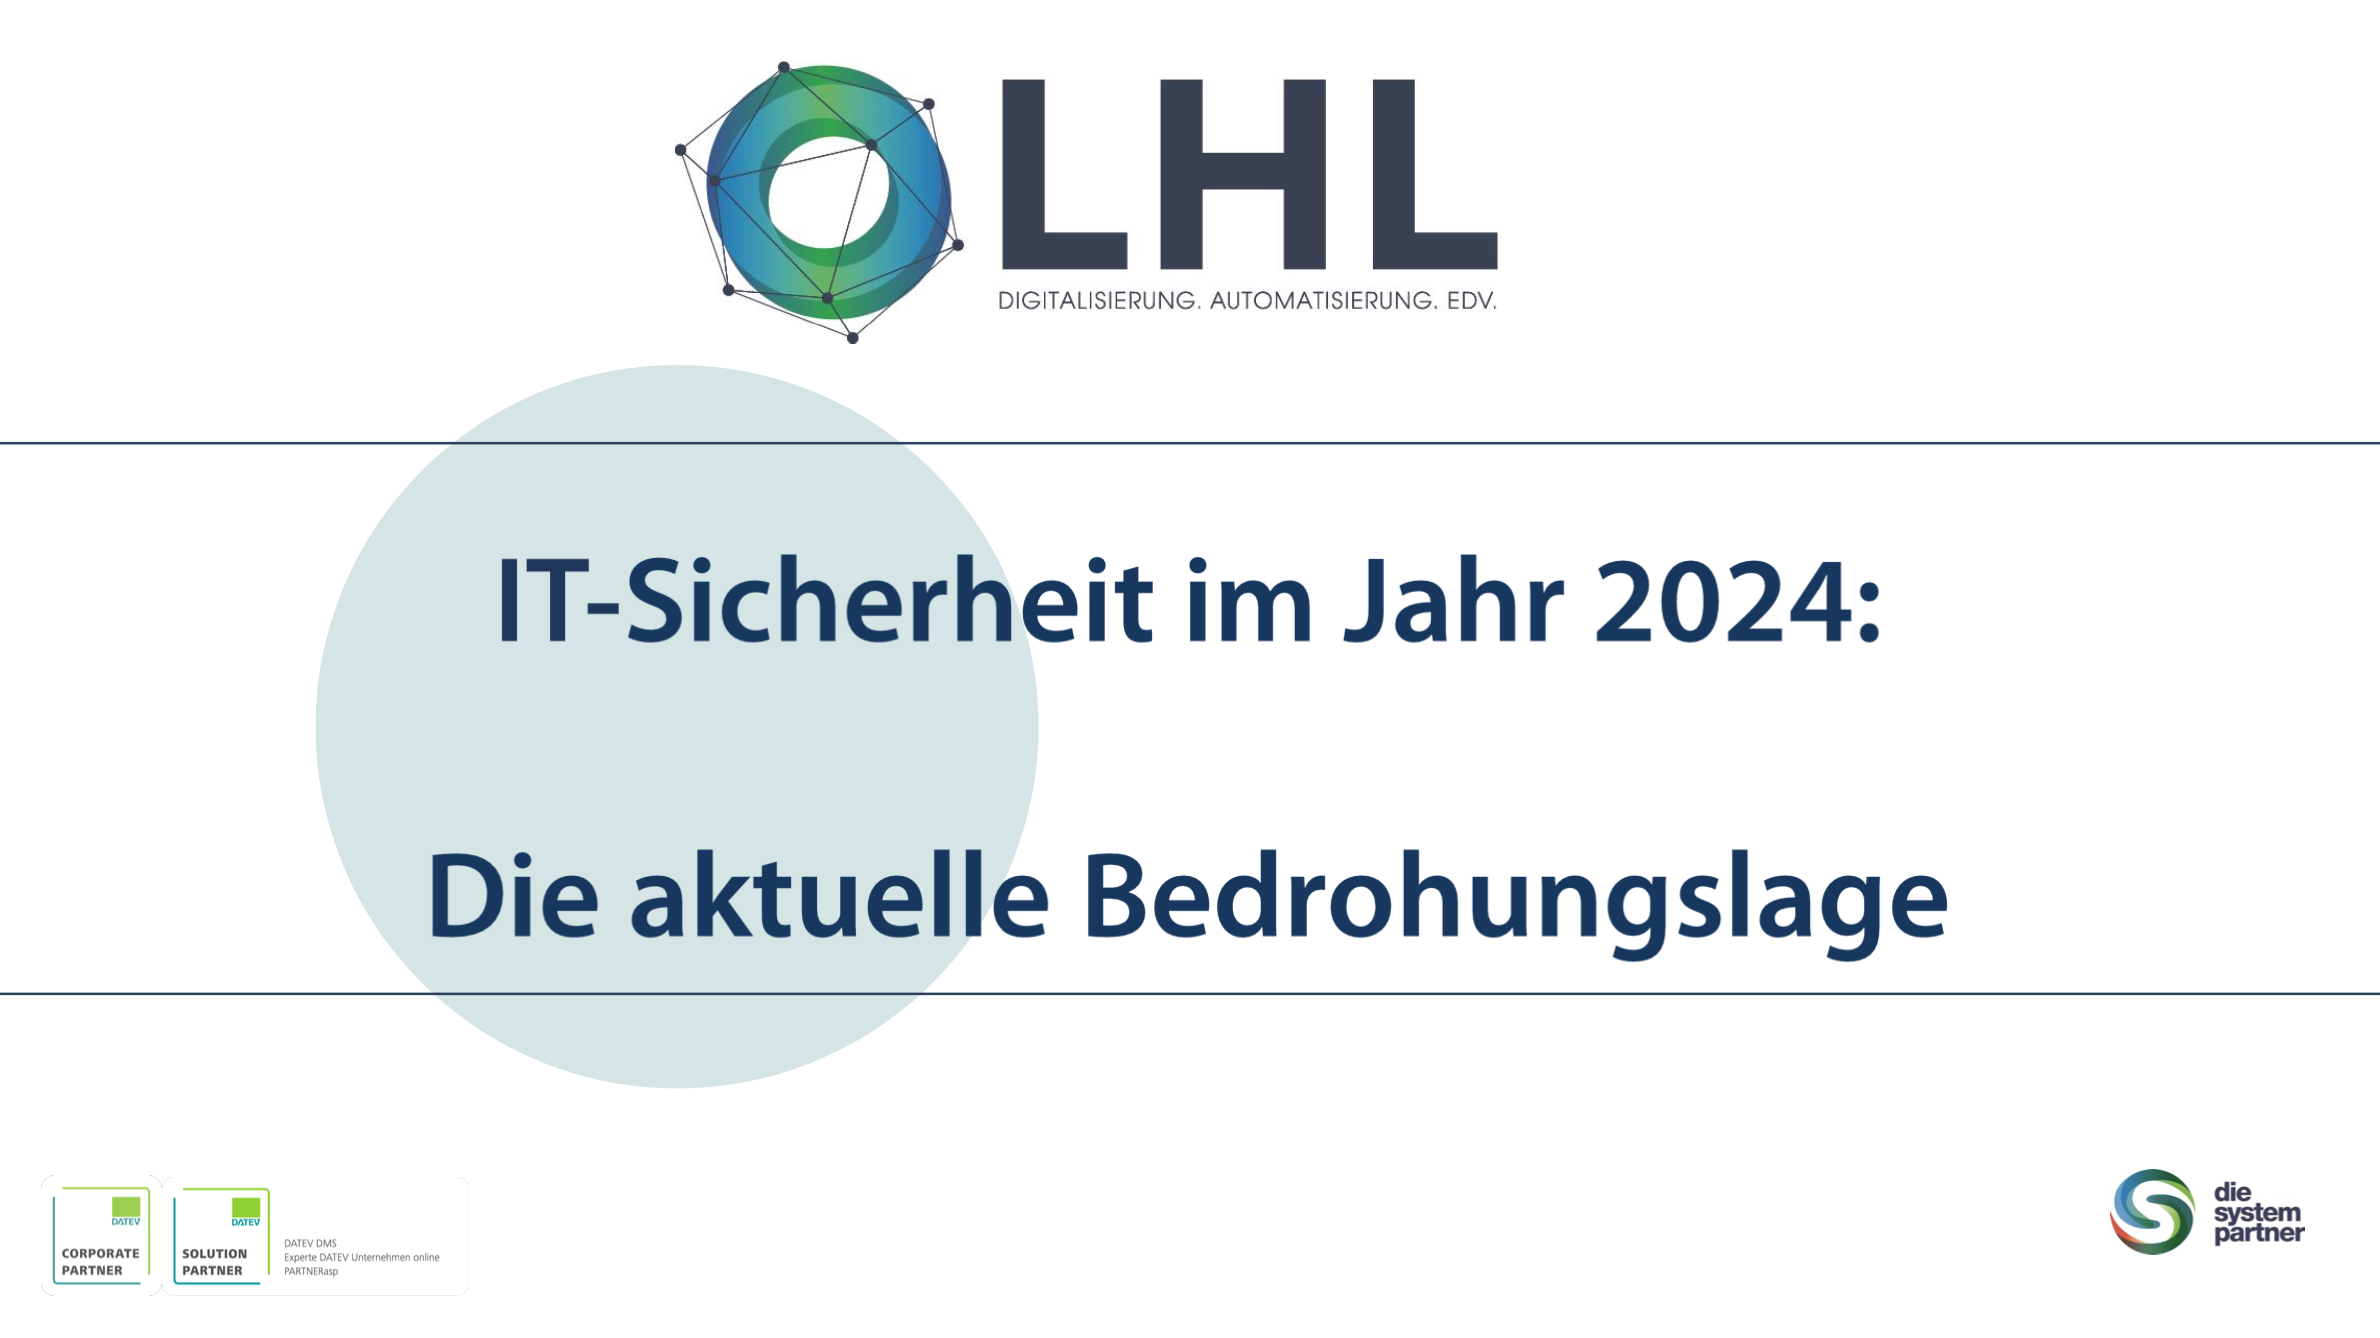 LHL München - EDV, Automatisierung, Digitalisierung